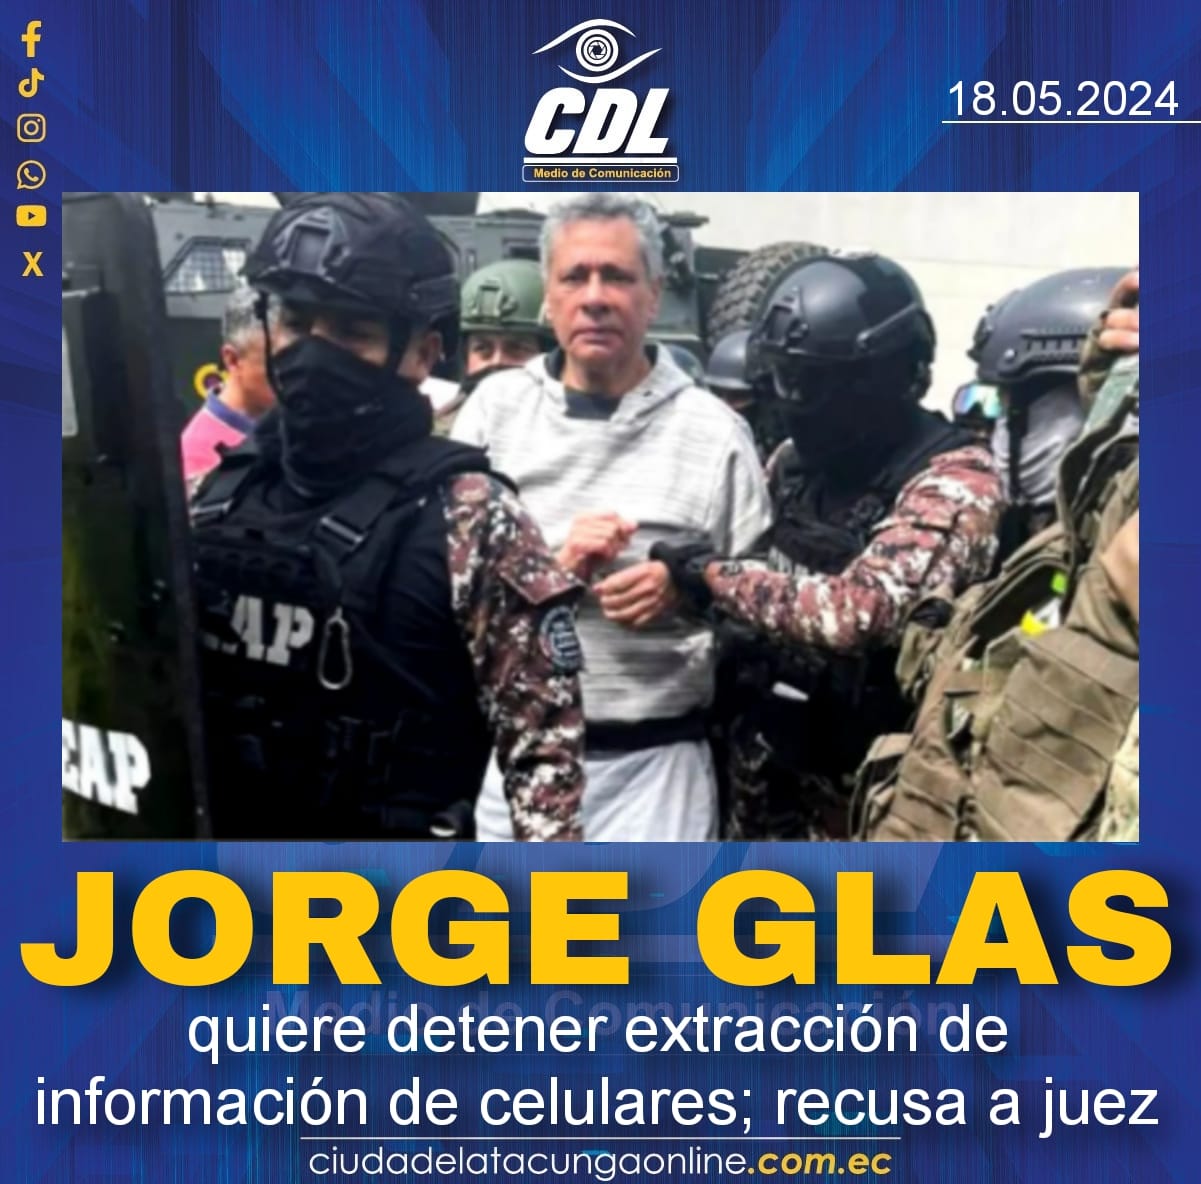 Jorge Glas quiere detener extracción de información de celulares; recusa a juez